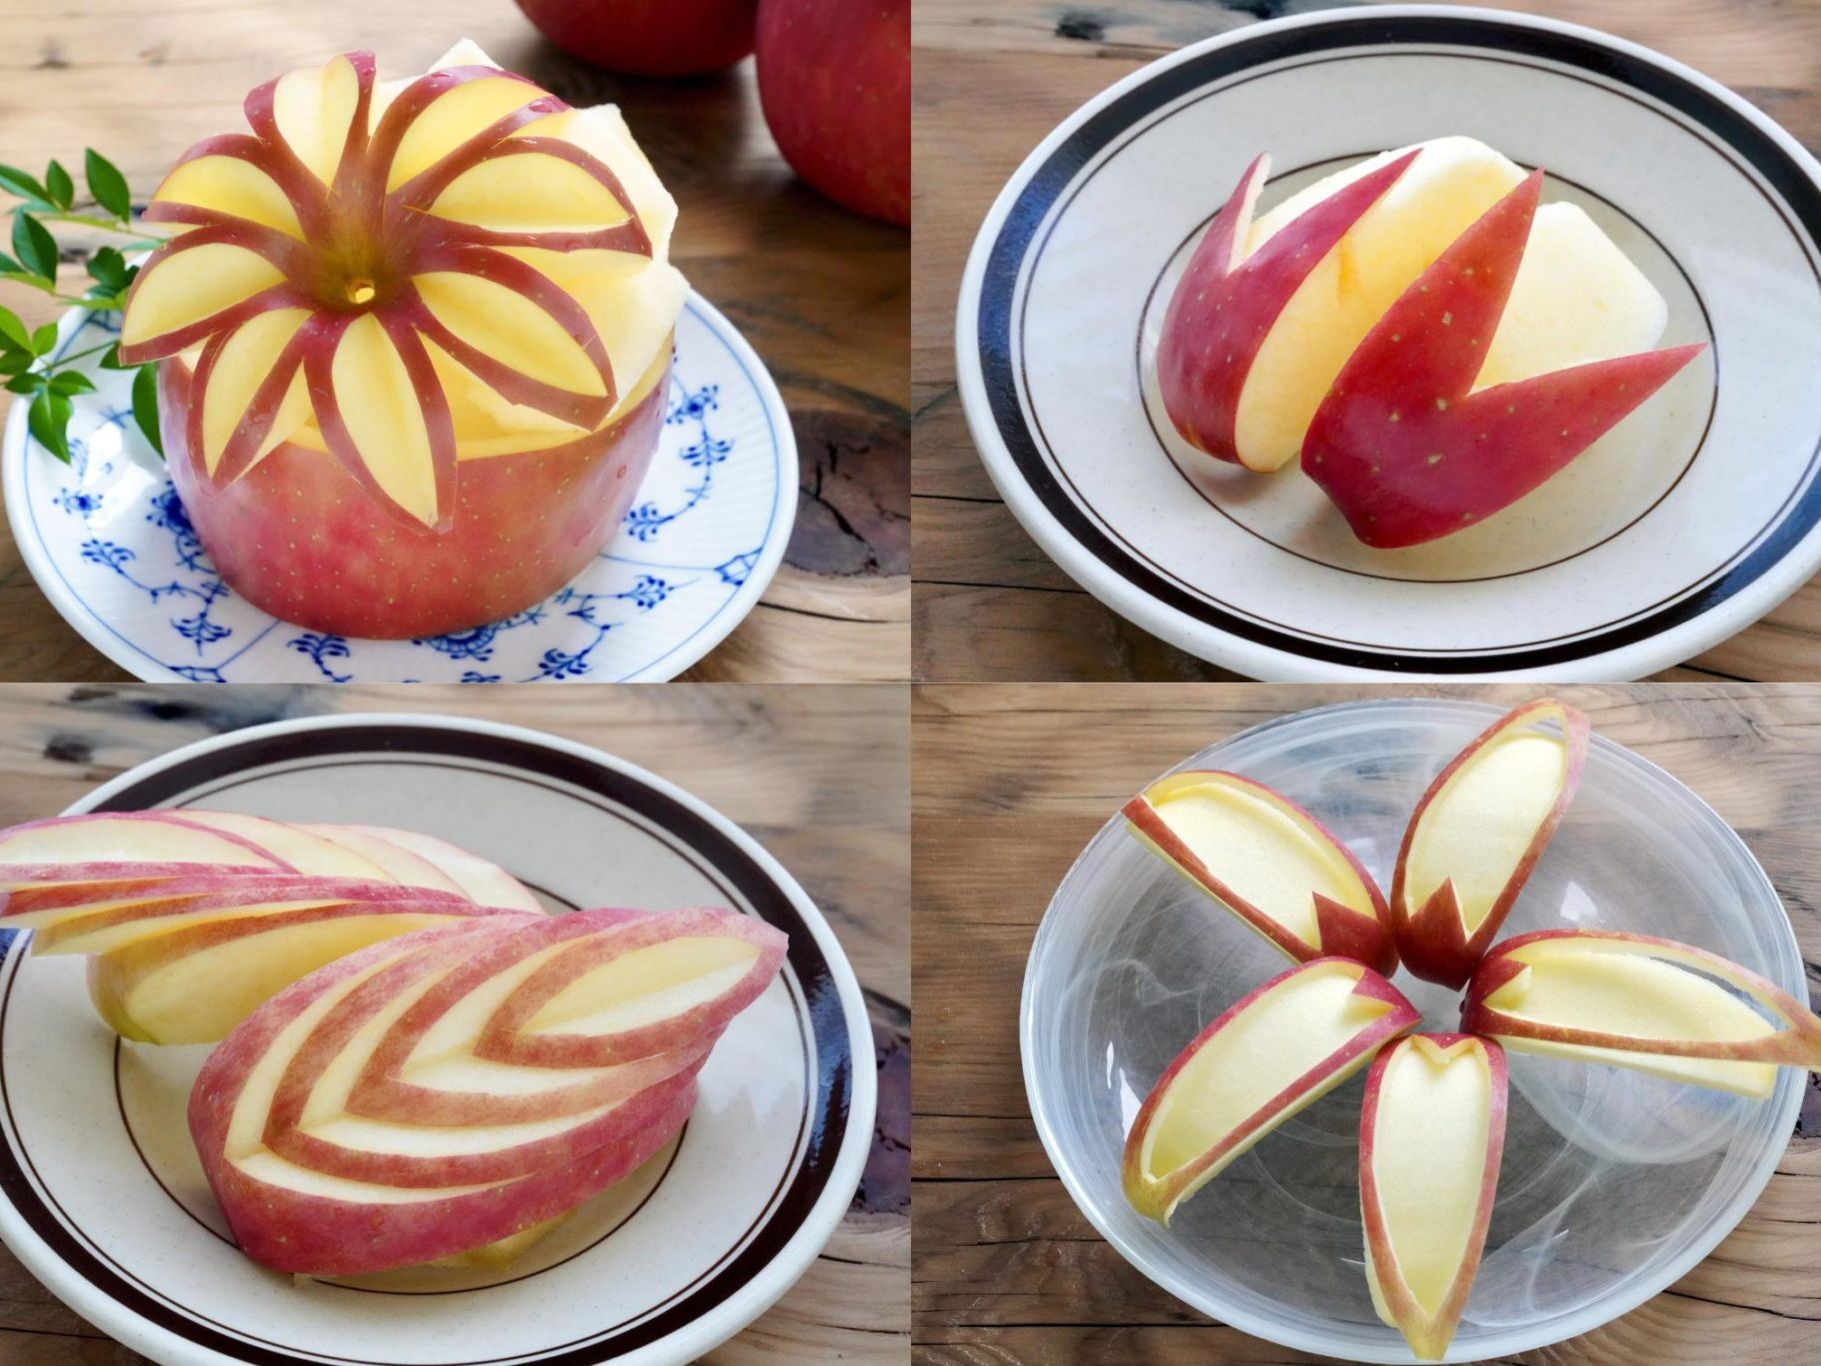 りんごの飾り切り 花などおしゃれなりんごカット5選を動画で紹介 やまでら くみこ のレシピ